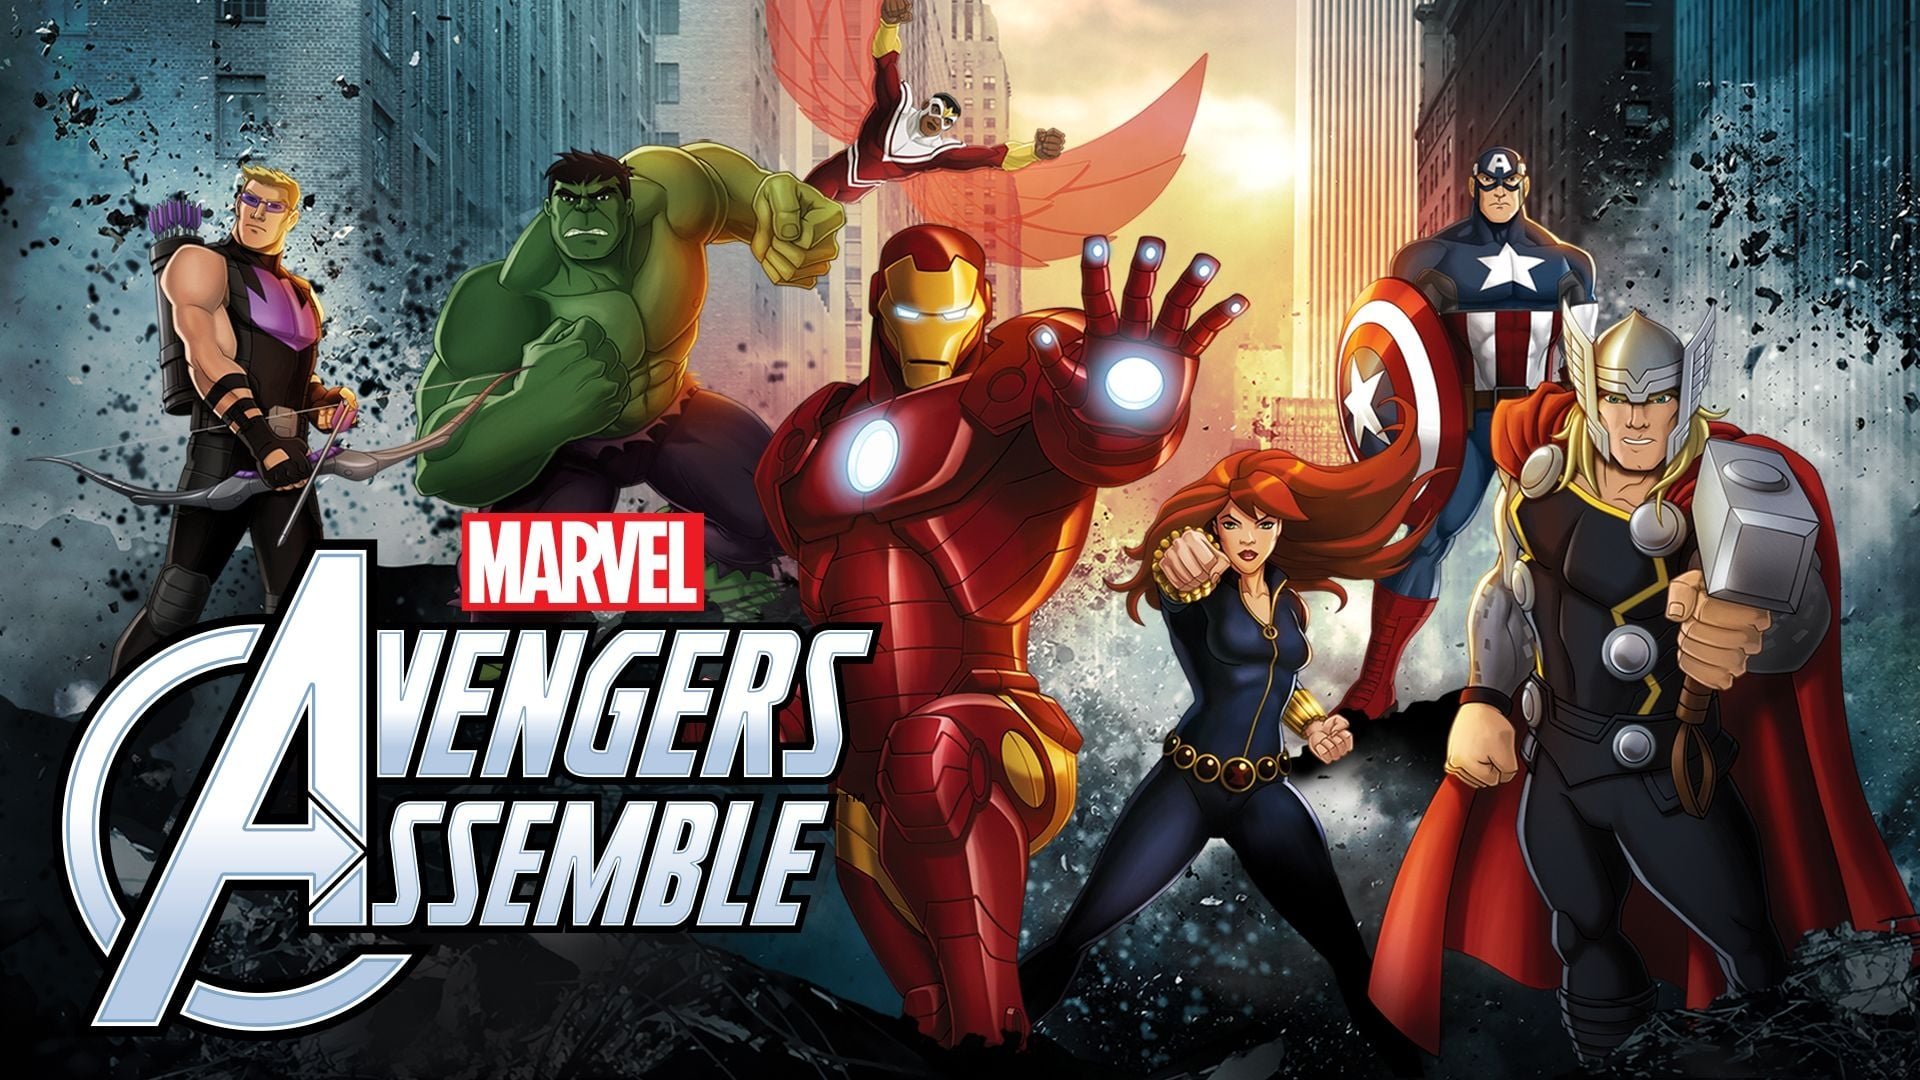 შურისმაძიებლები სეზონი 5 / Avengers Assemble Season 5 ქართულად